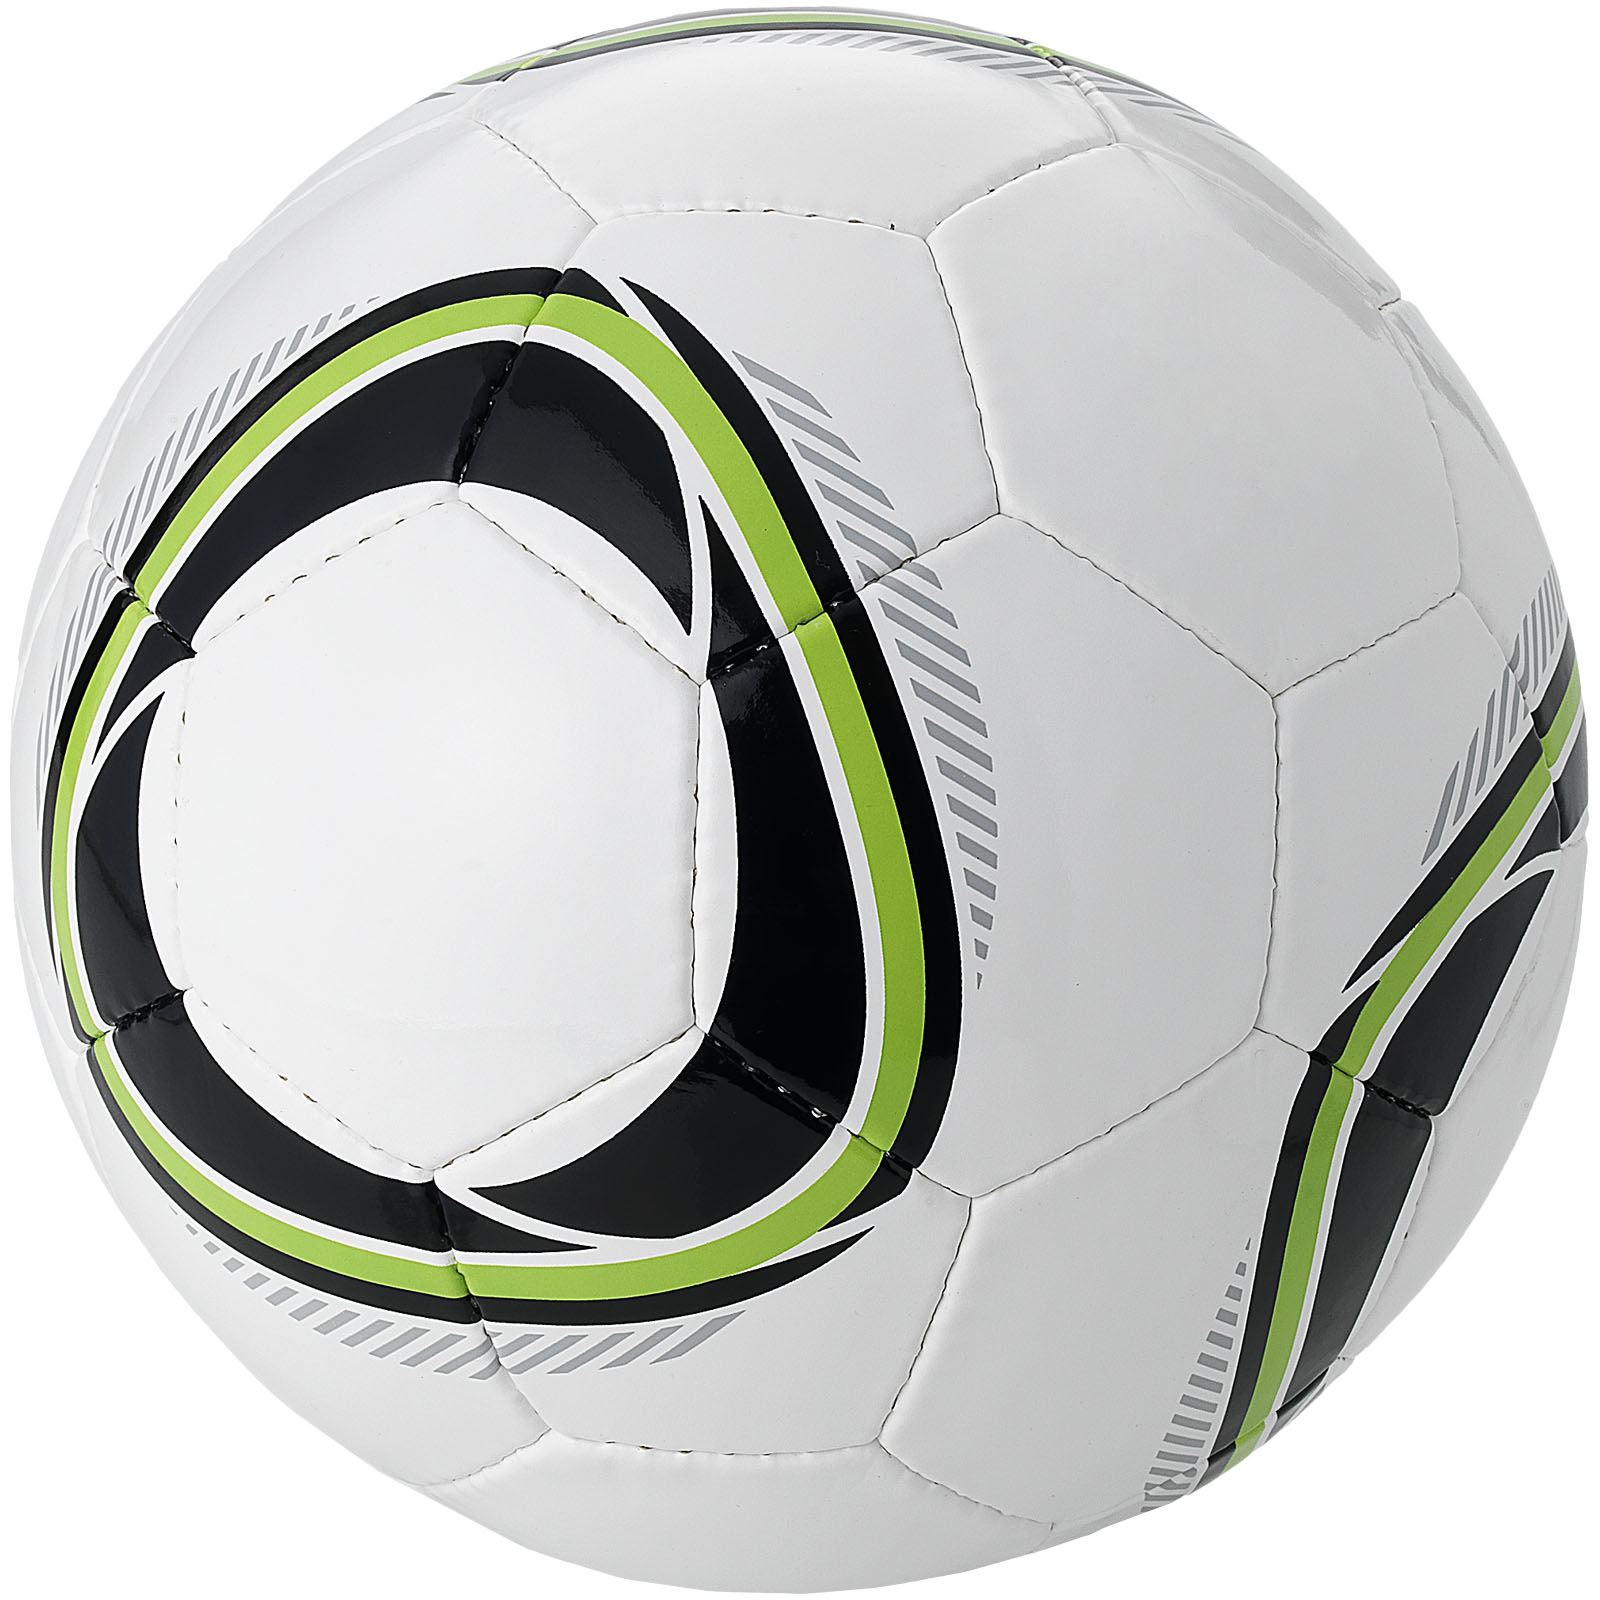 Ballon de football taille 4 personnalisé - Dario - Zaprinta France